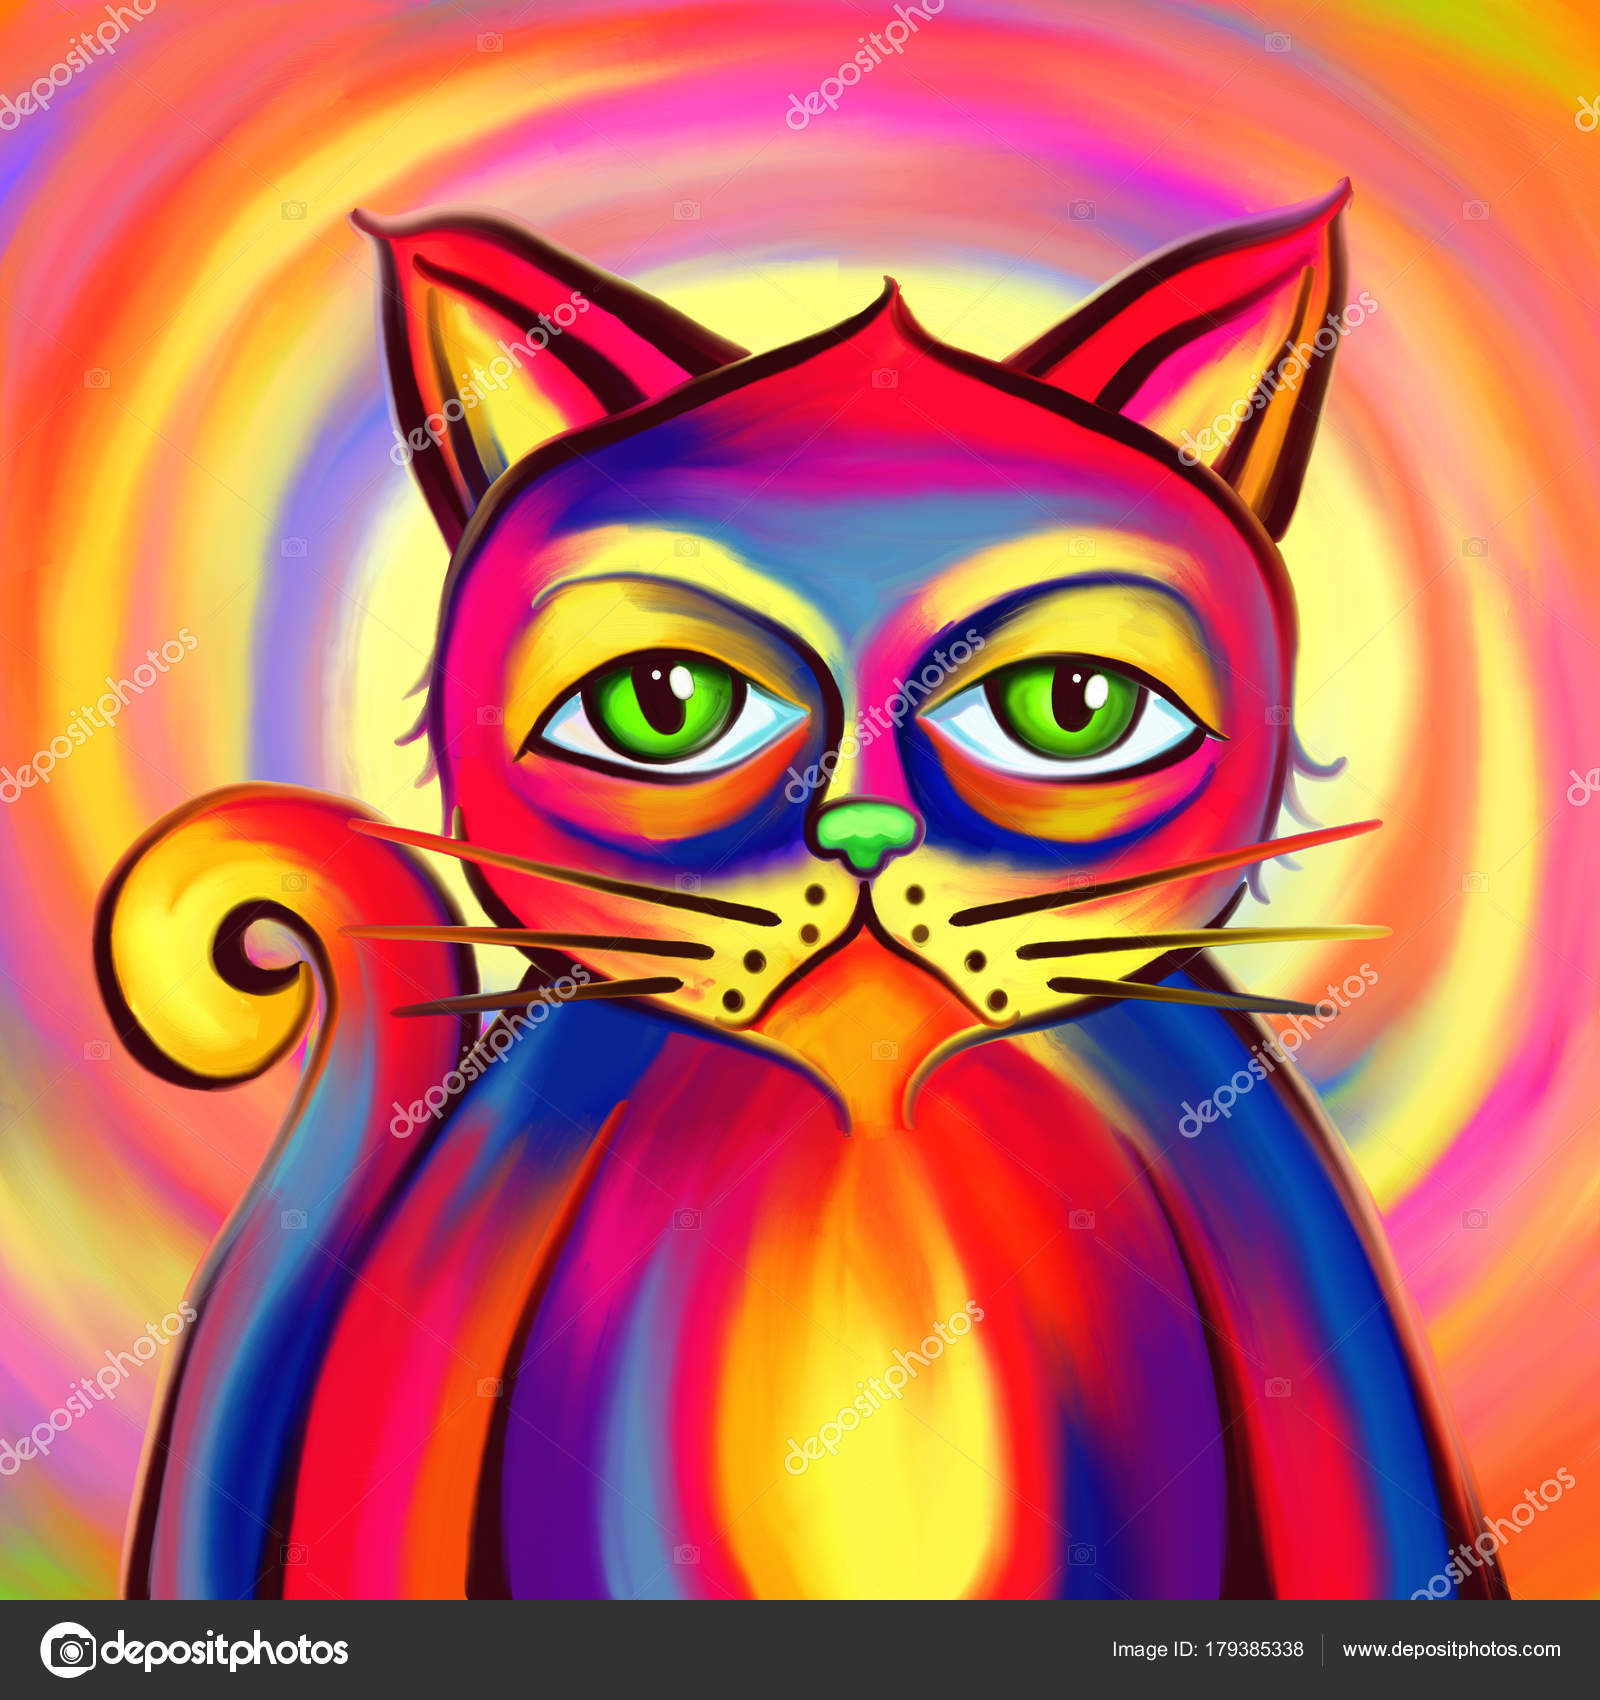 Desenho de gatinho fofo pintado e colorido por Usuário não